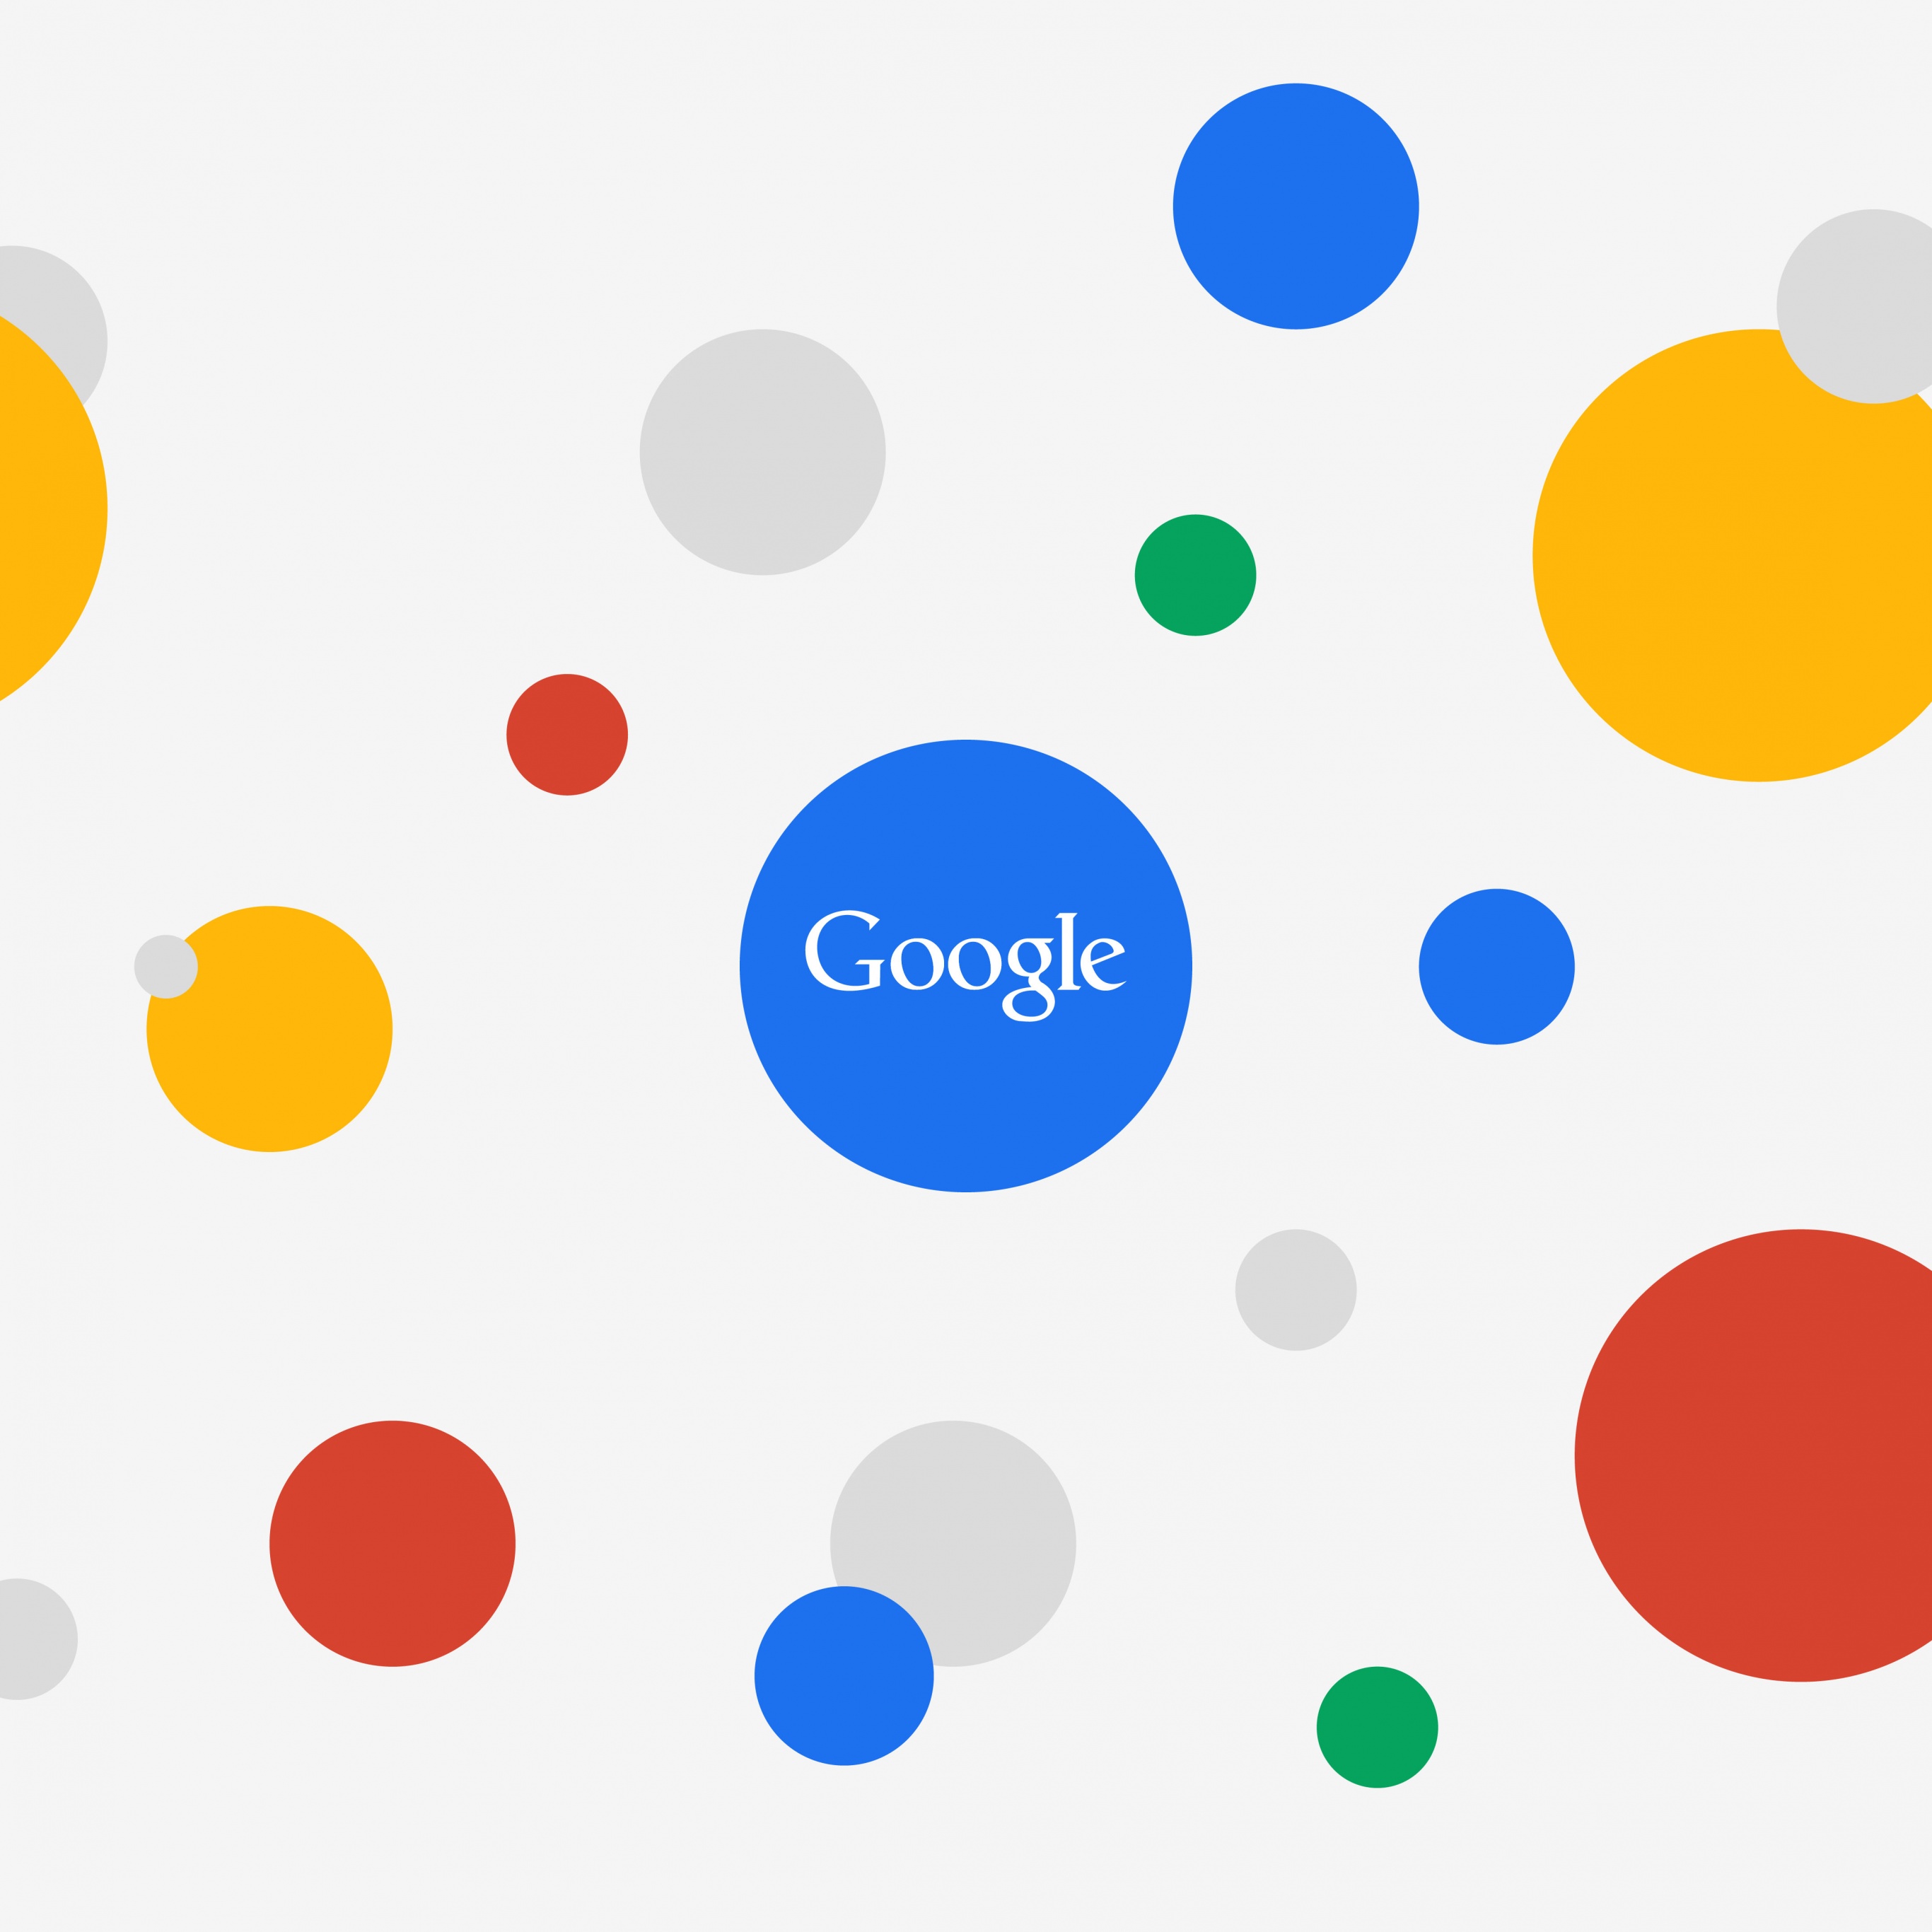 Hãy sẵn sàng cho một trải nghiệm tuyệt vời với Google Wallpaper! Hình ảnh các vòng tròn đa sắc sẽ đưa bạn vào một thế giới màu sắc và vui nhộn. Đừng quên trang trí màn hình của bạn để tỏa sáng cùng Google Wallpaper nhé!